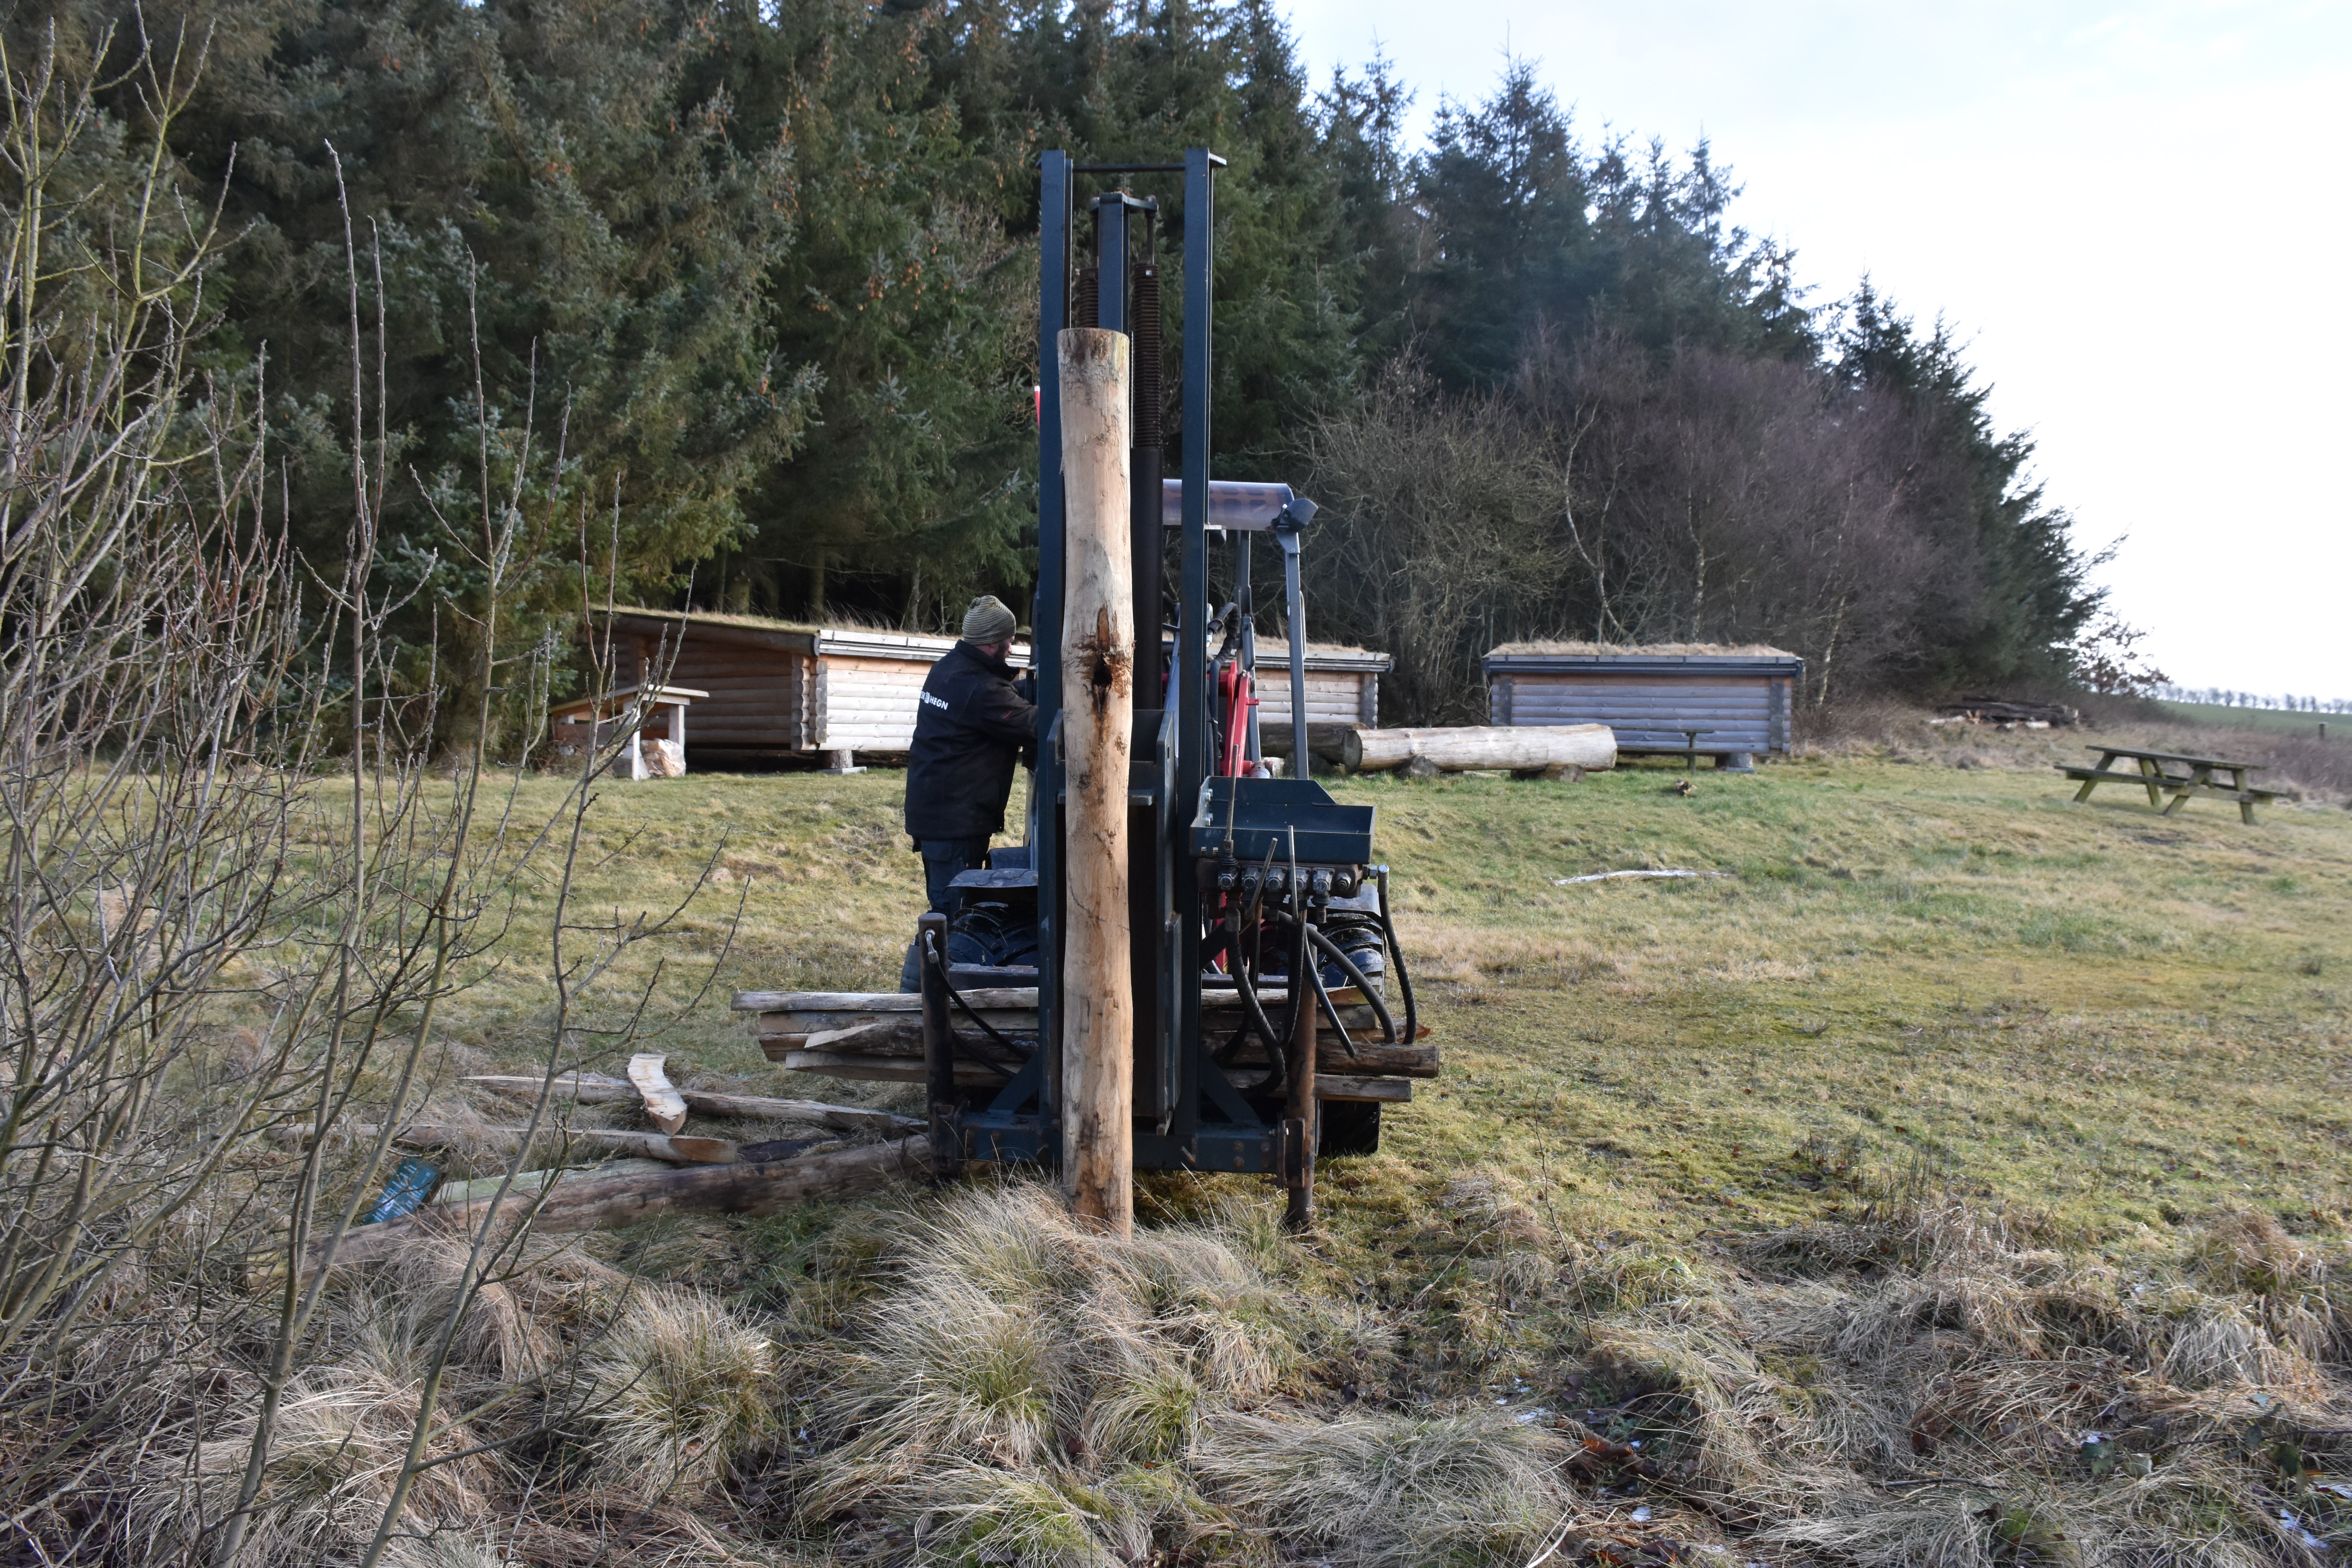 Der bruges maskiner til at banke stolperne i den frosne jord. Foto Klavs Bærent Iversen